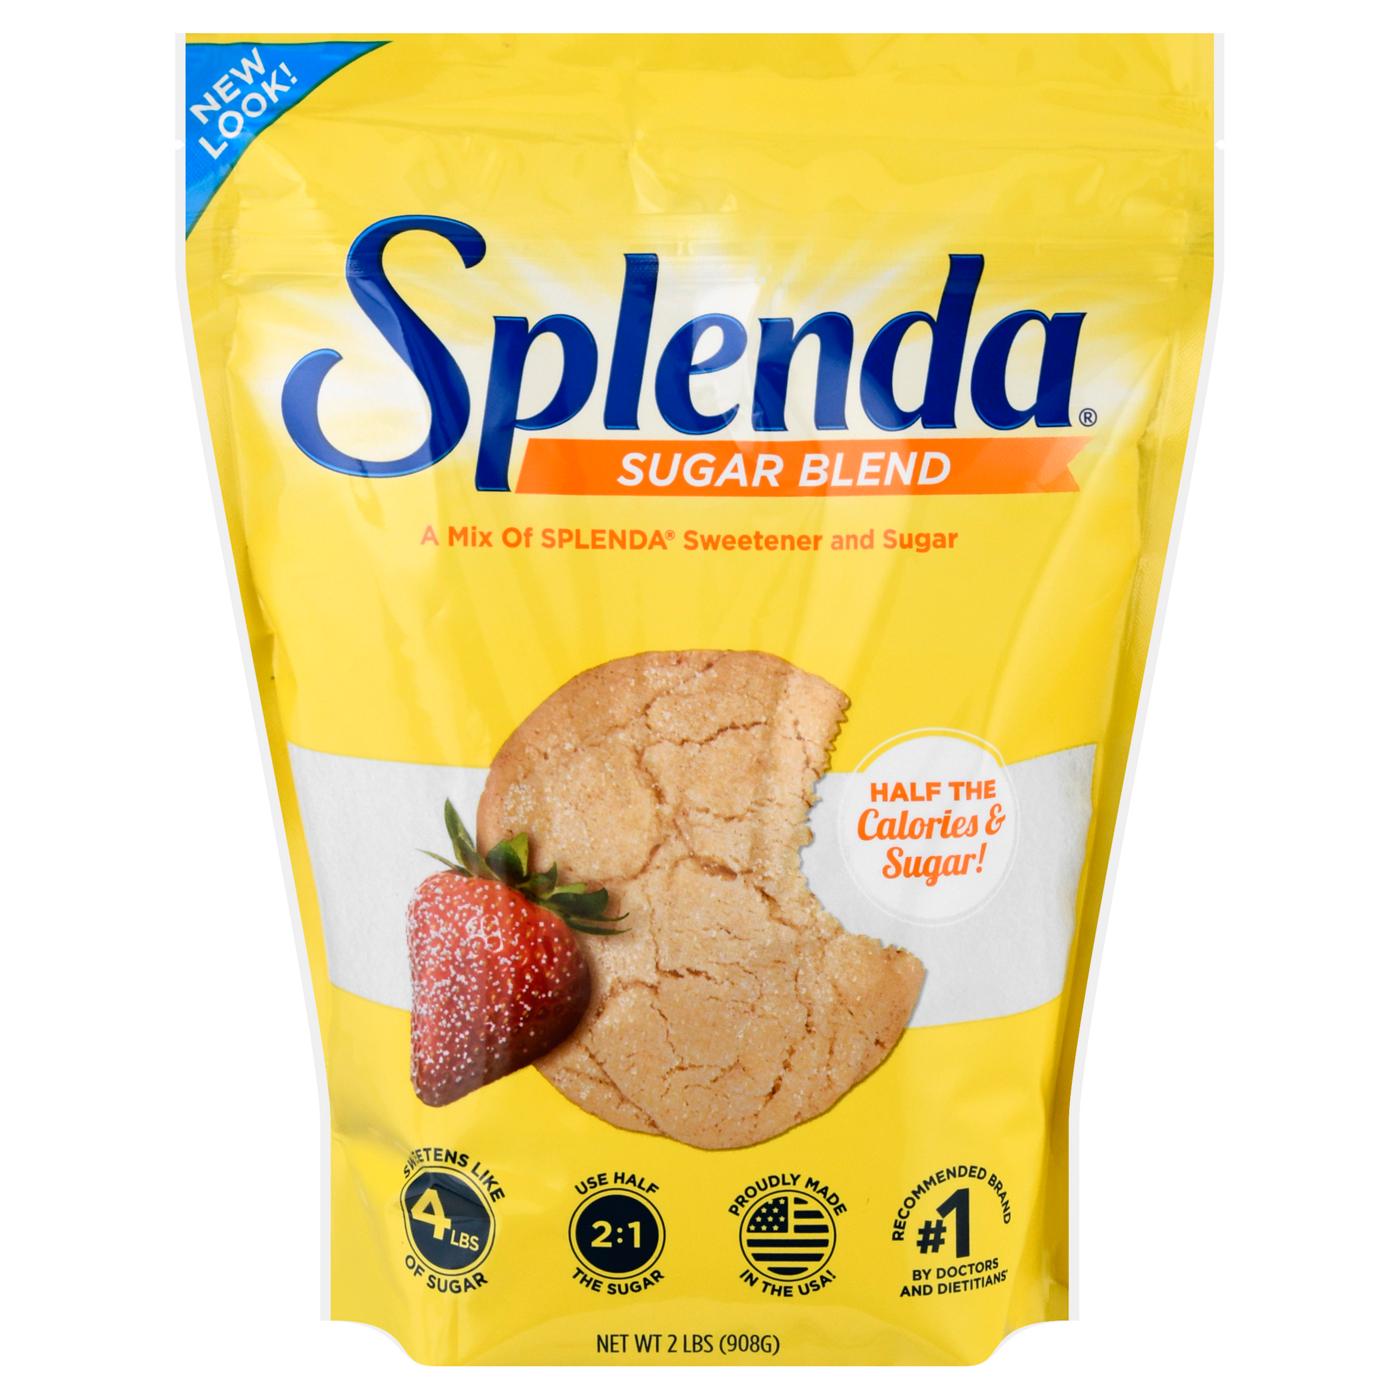 Splenda Sugar Blend for Baking; image 1 of 2